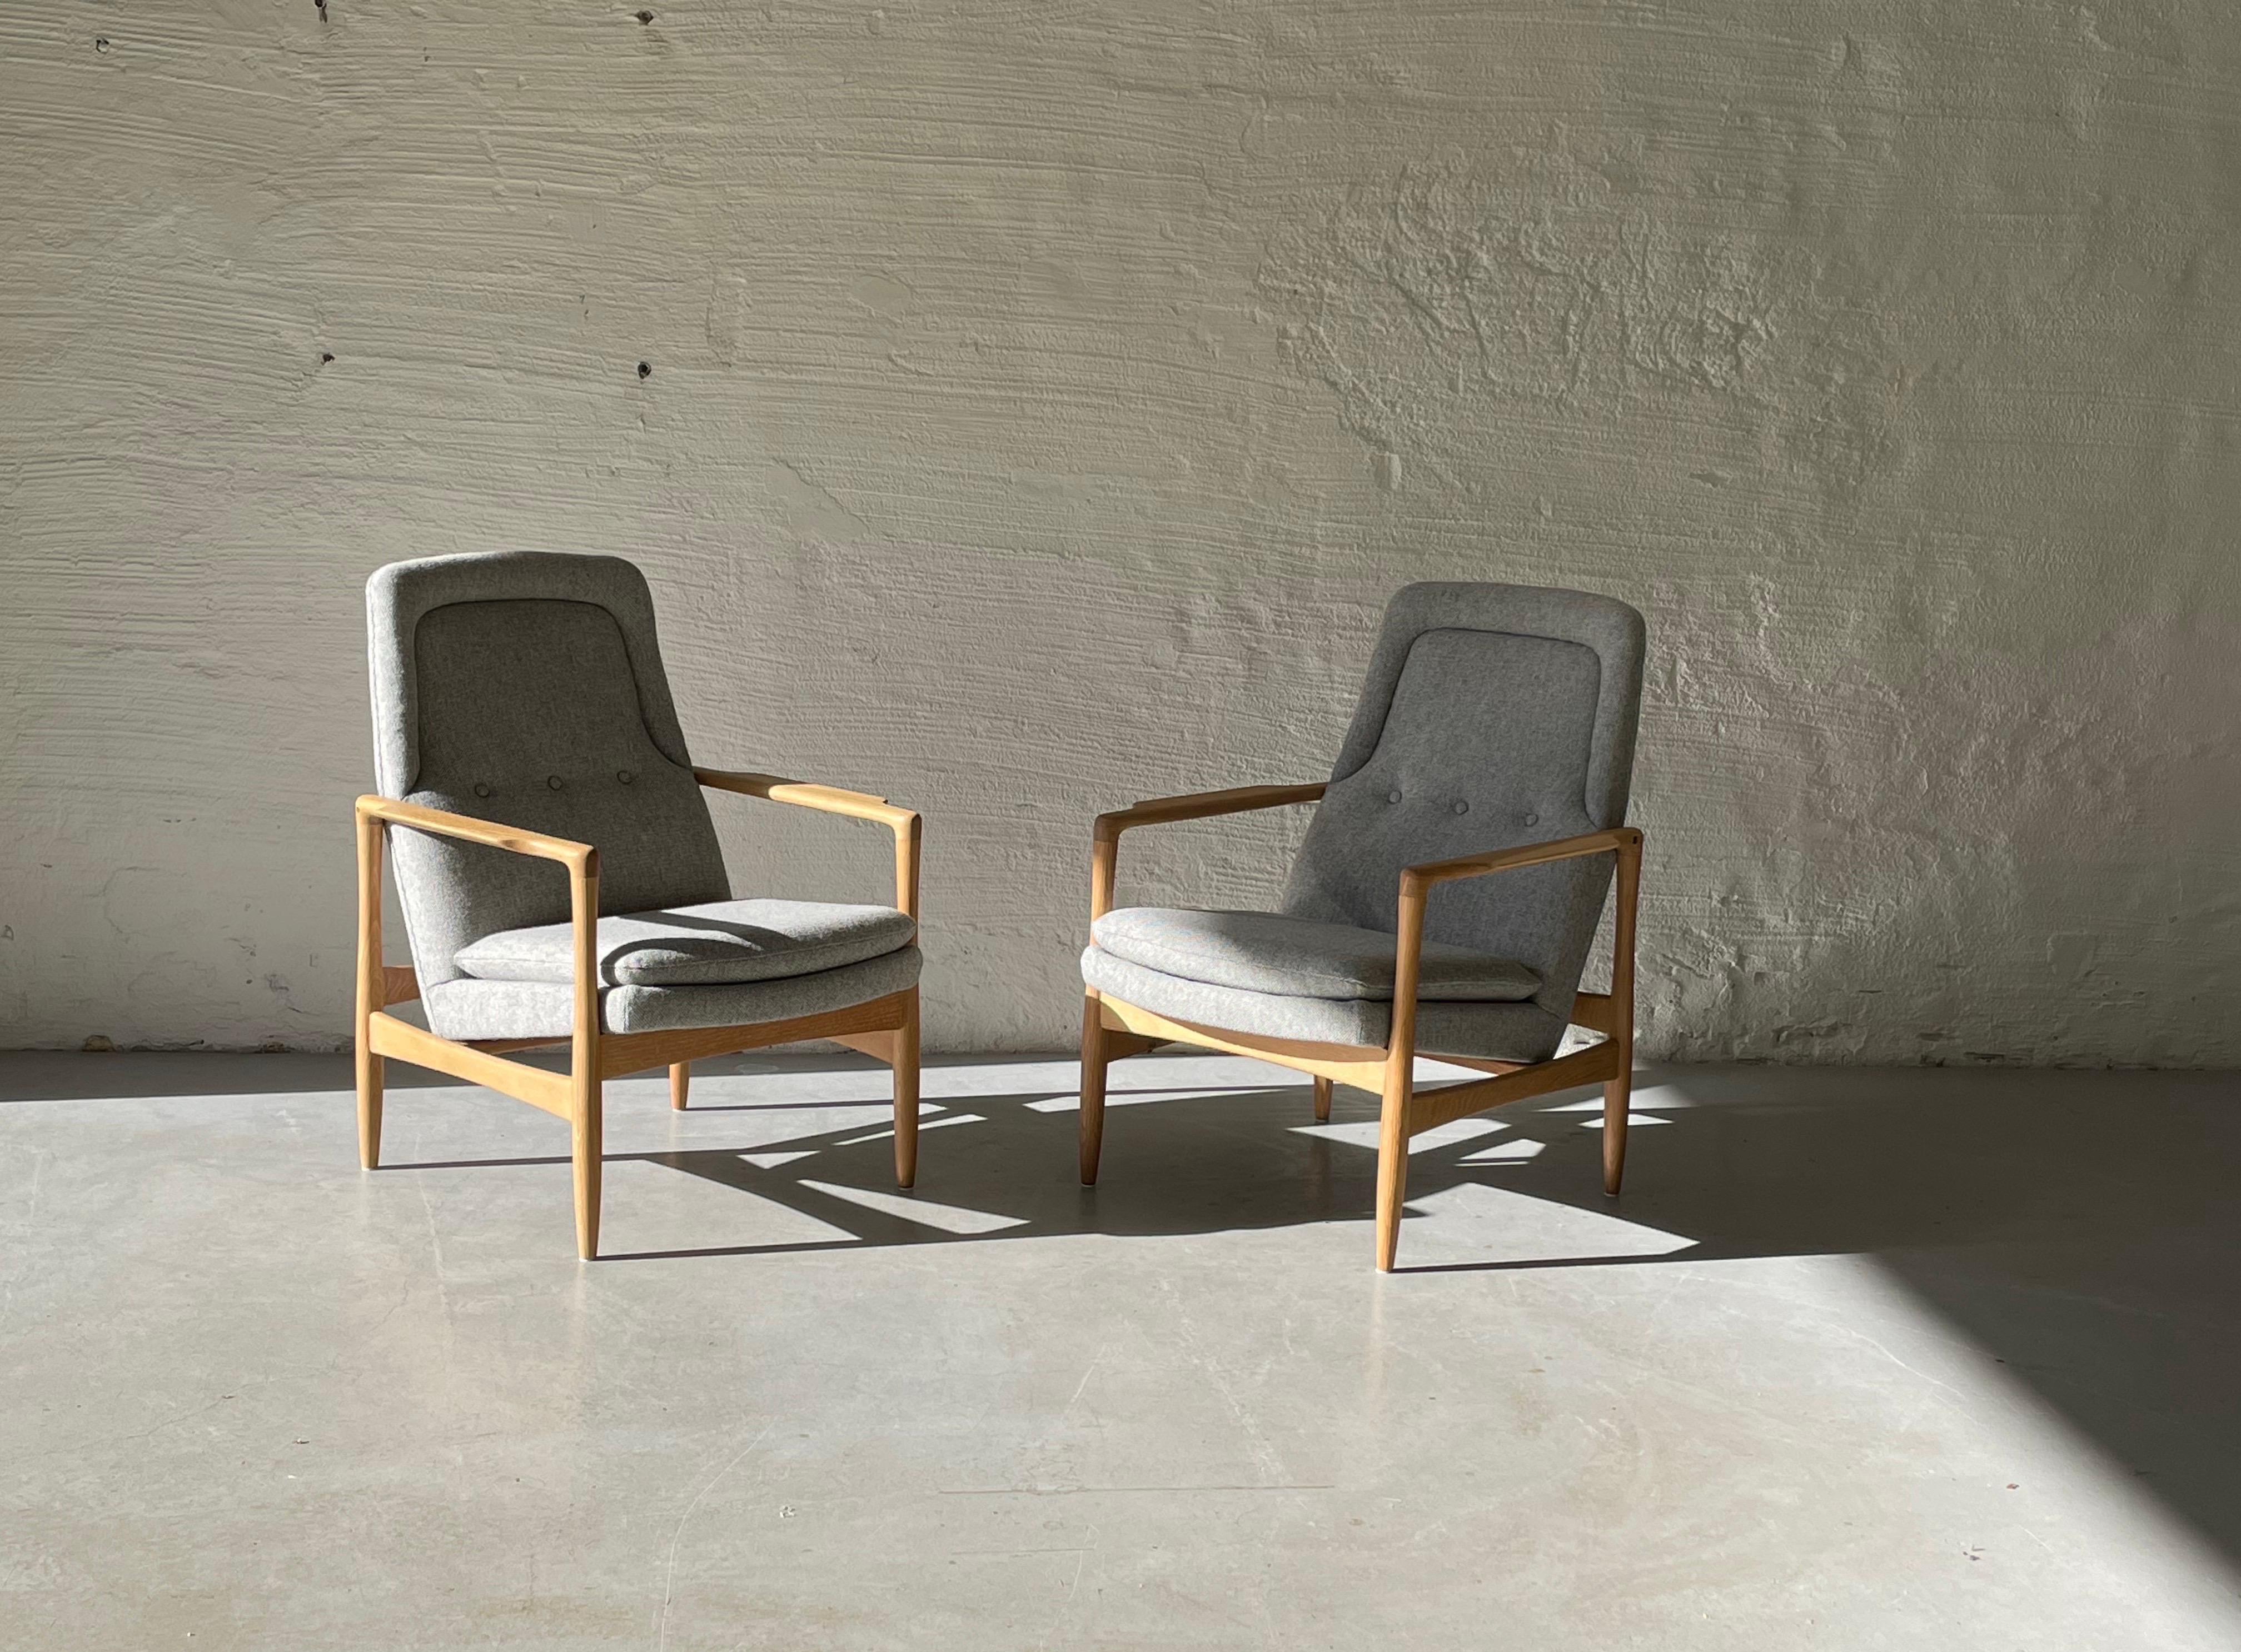 Vente de deux fauteuils modèle Lobby conçus par Torbjørn Afdal  pour Bruksbo Tegnekontor, 1957. Produit par Svein Bjørneng møbelfabrikk, Norvège
Les chaises ont été retapissées en tissu de laine provenant de Gudbrandsdalens Uldvarefabrikk et sont en